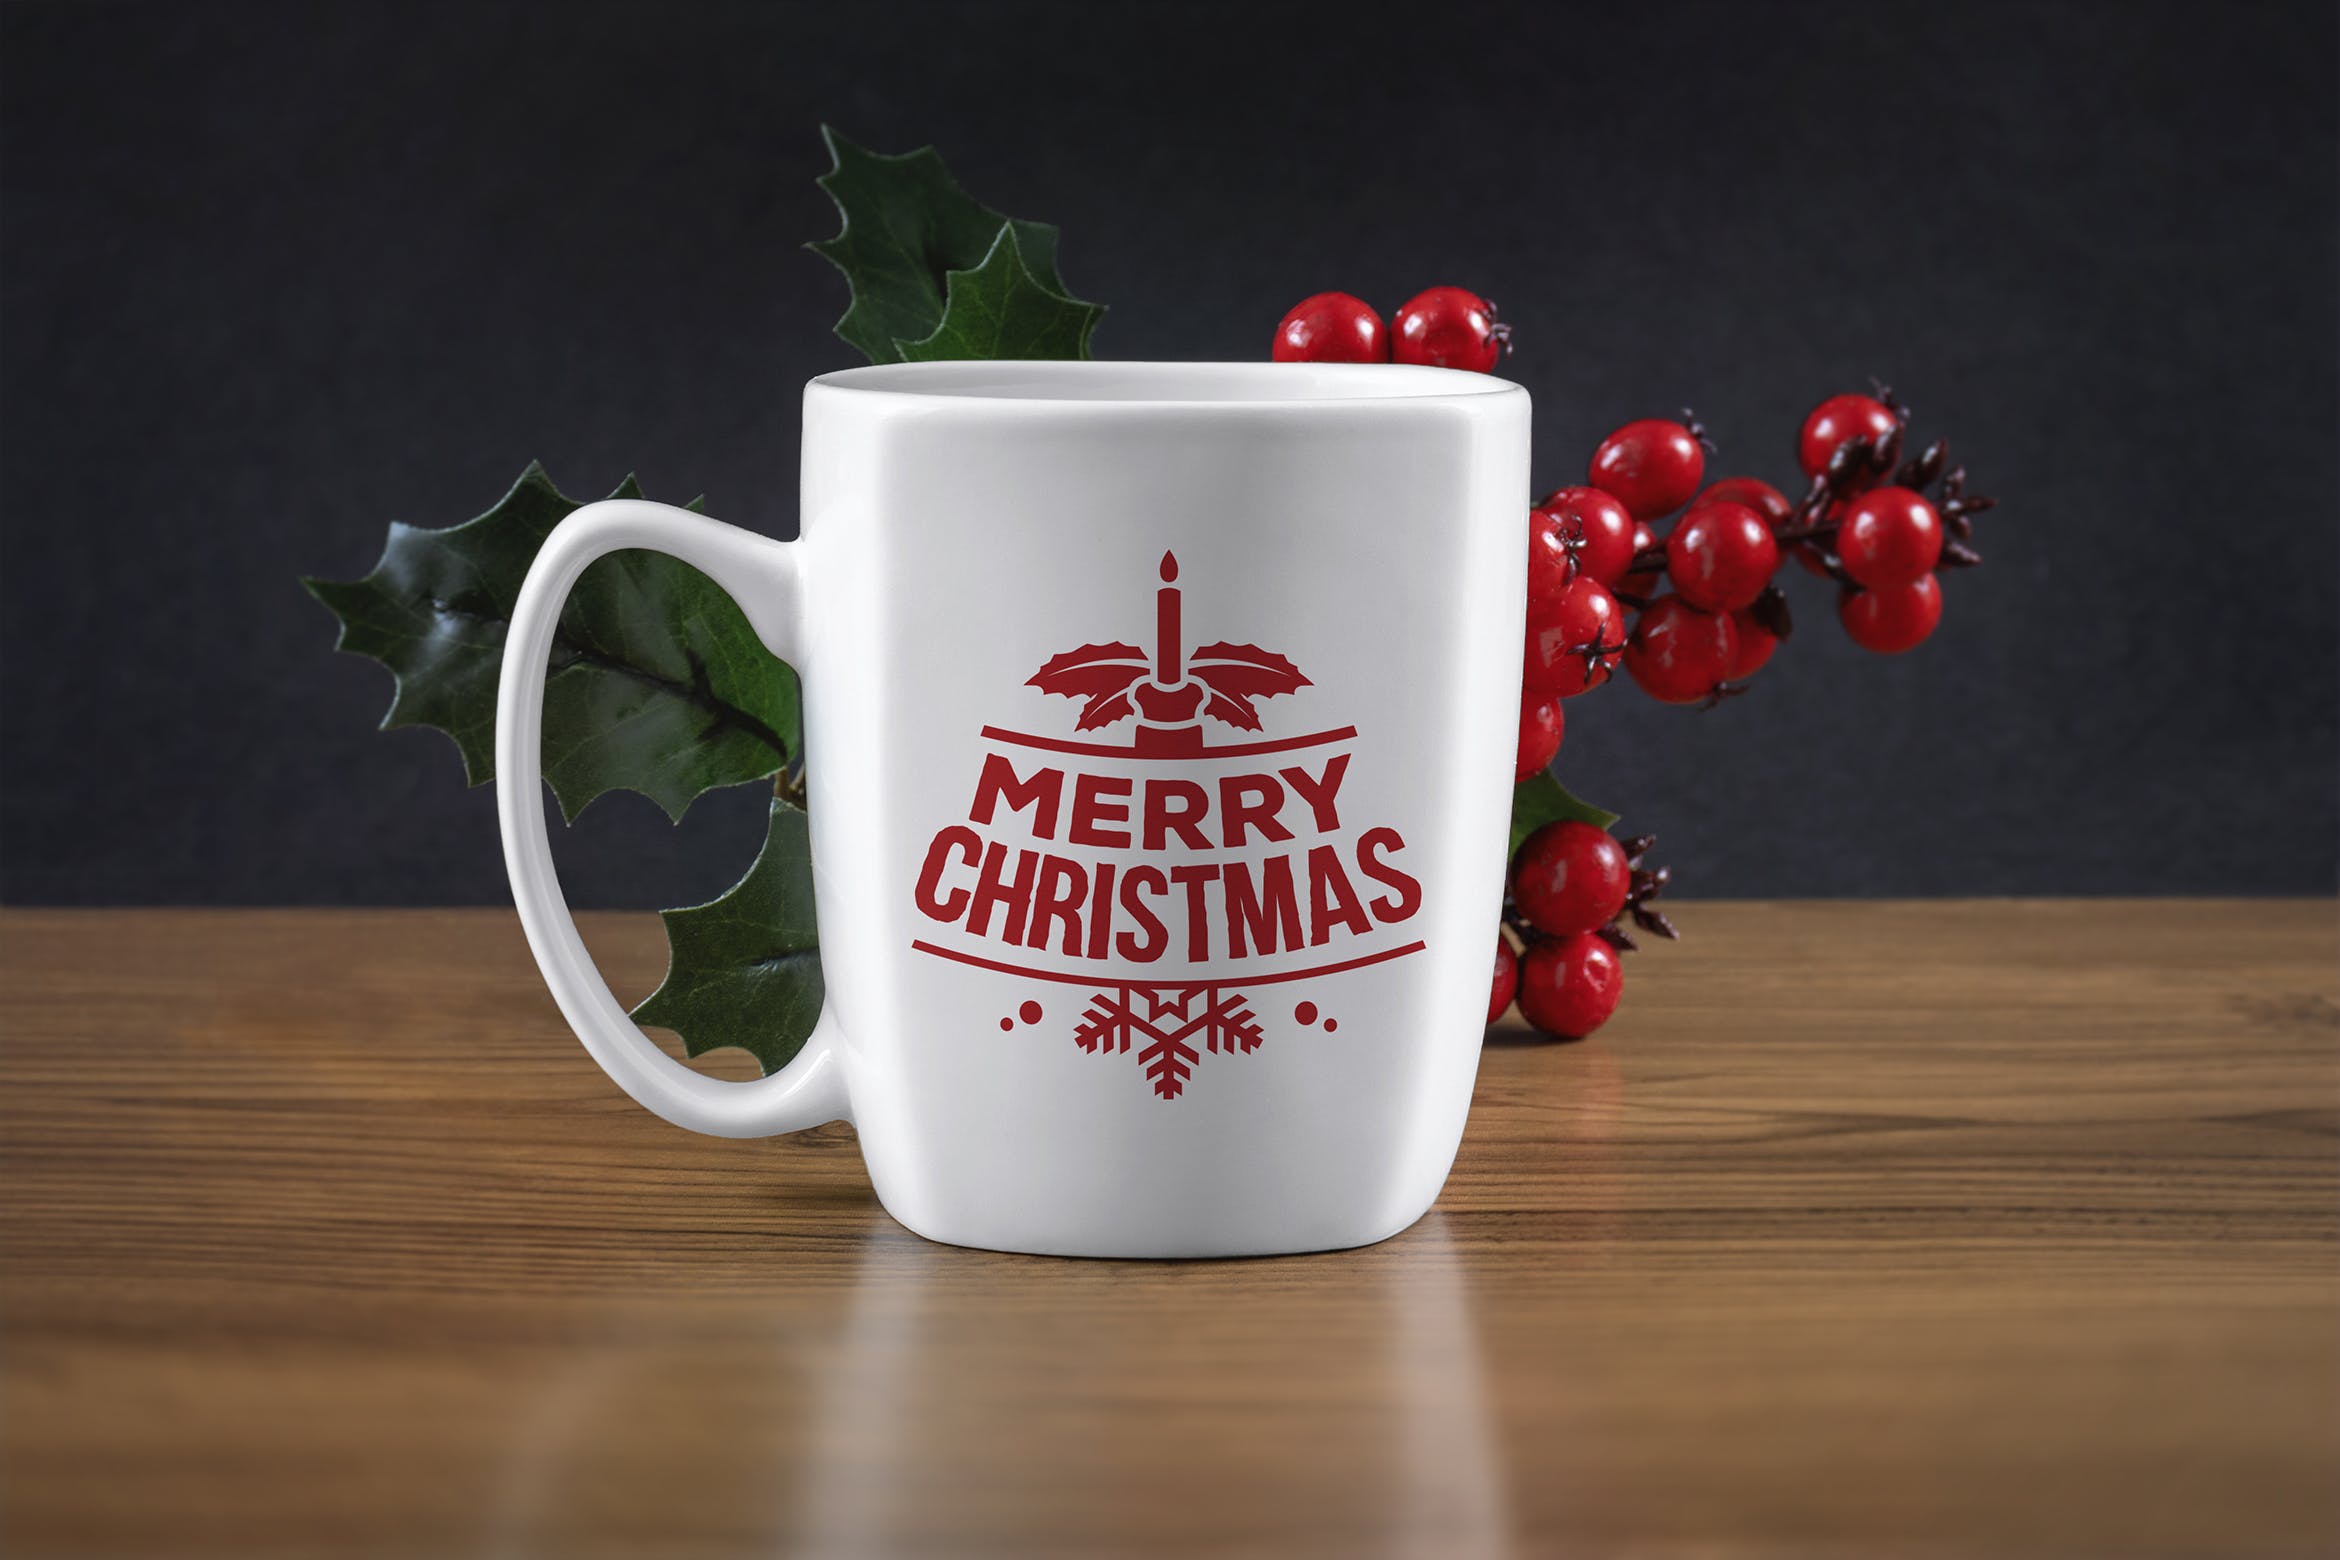 圣诞节主题马克杯设计效果图样机第一素材精选 Christmas mug mockup插图